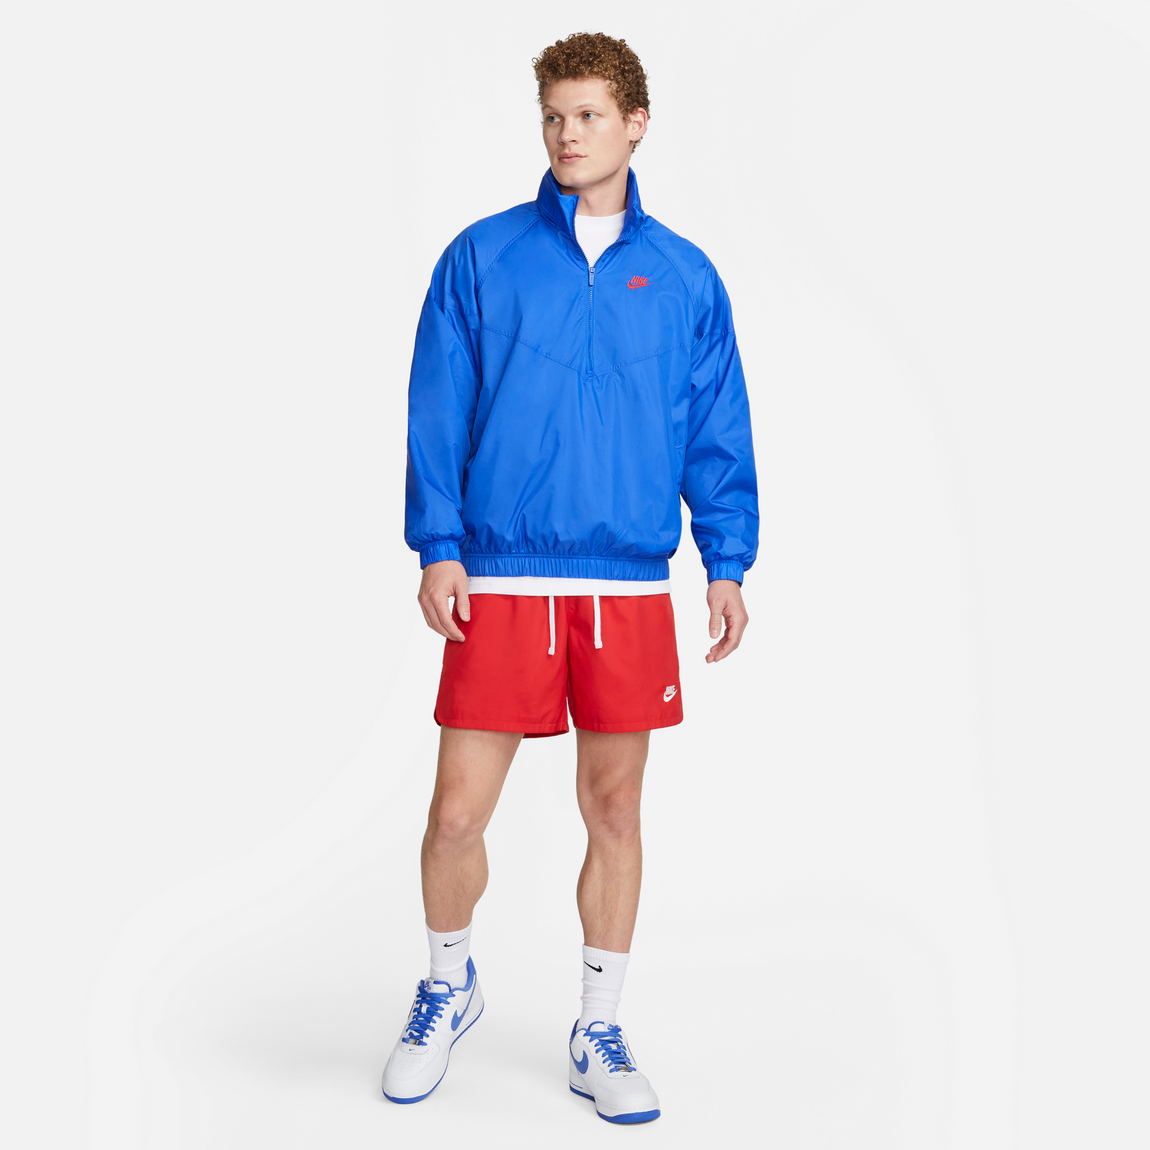 Nike Sportswear Windrunner Jacket (Hyper Royal/University Red) - Nike Sportswear Windrunner Jacket (Hyper Royal/University Red) - 